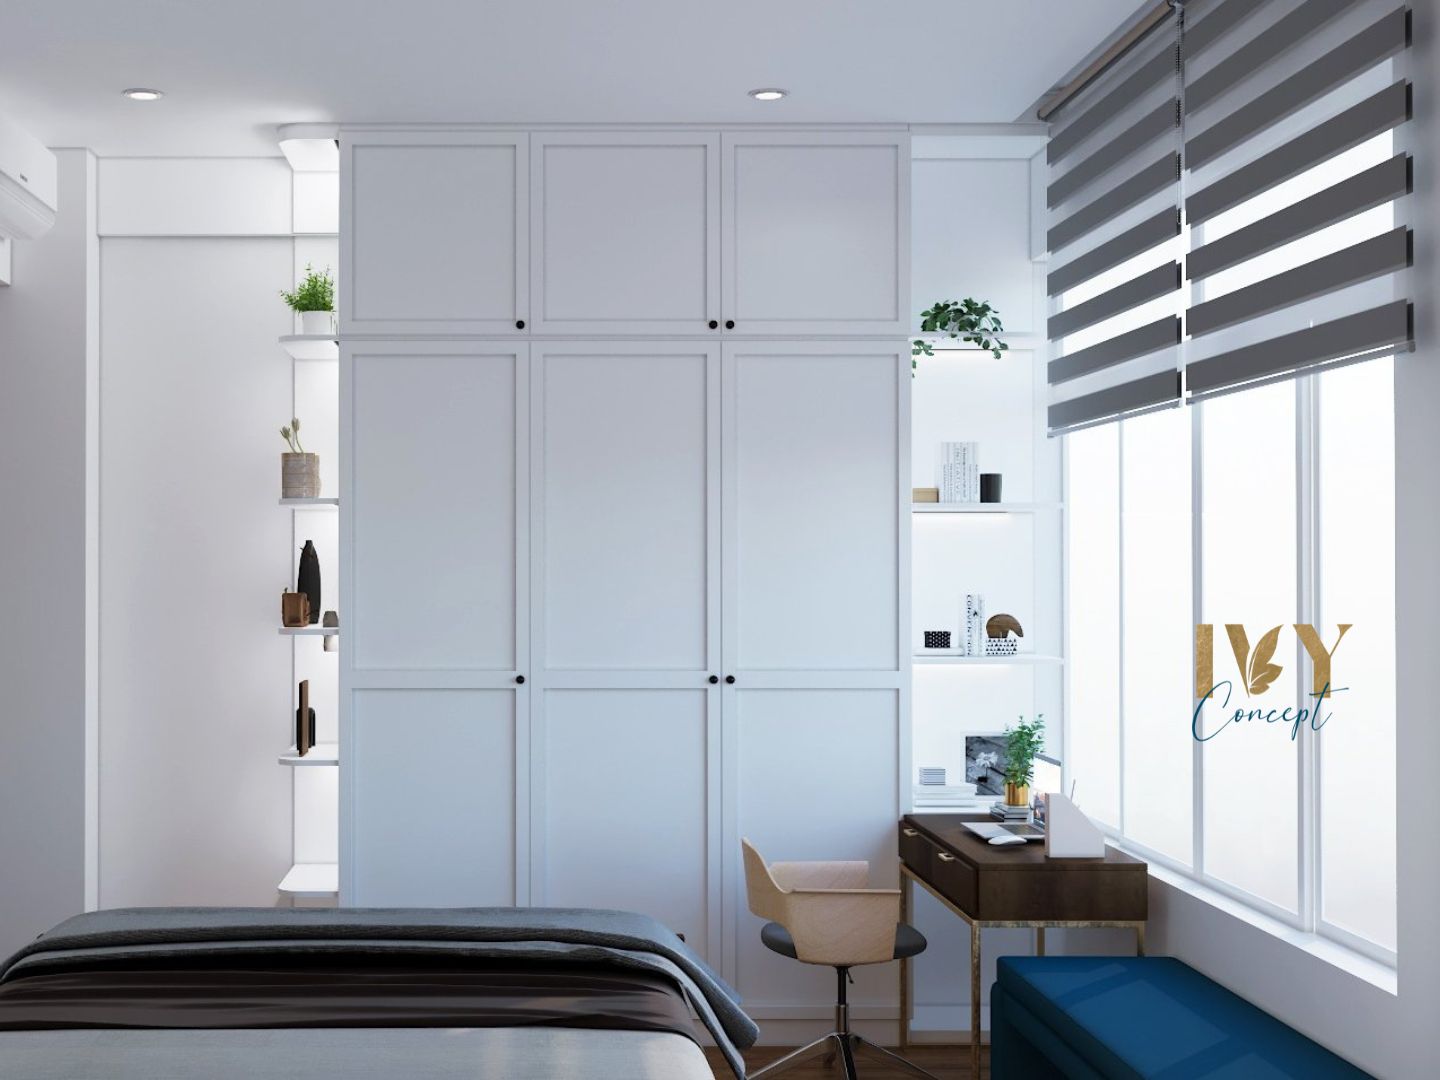 Phòng ngủ, phong cách Công nghiệp Industrial, thiết kế concept nội thất, căn hộ Tản Đà Court